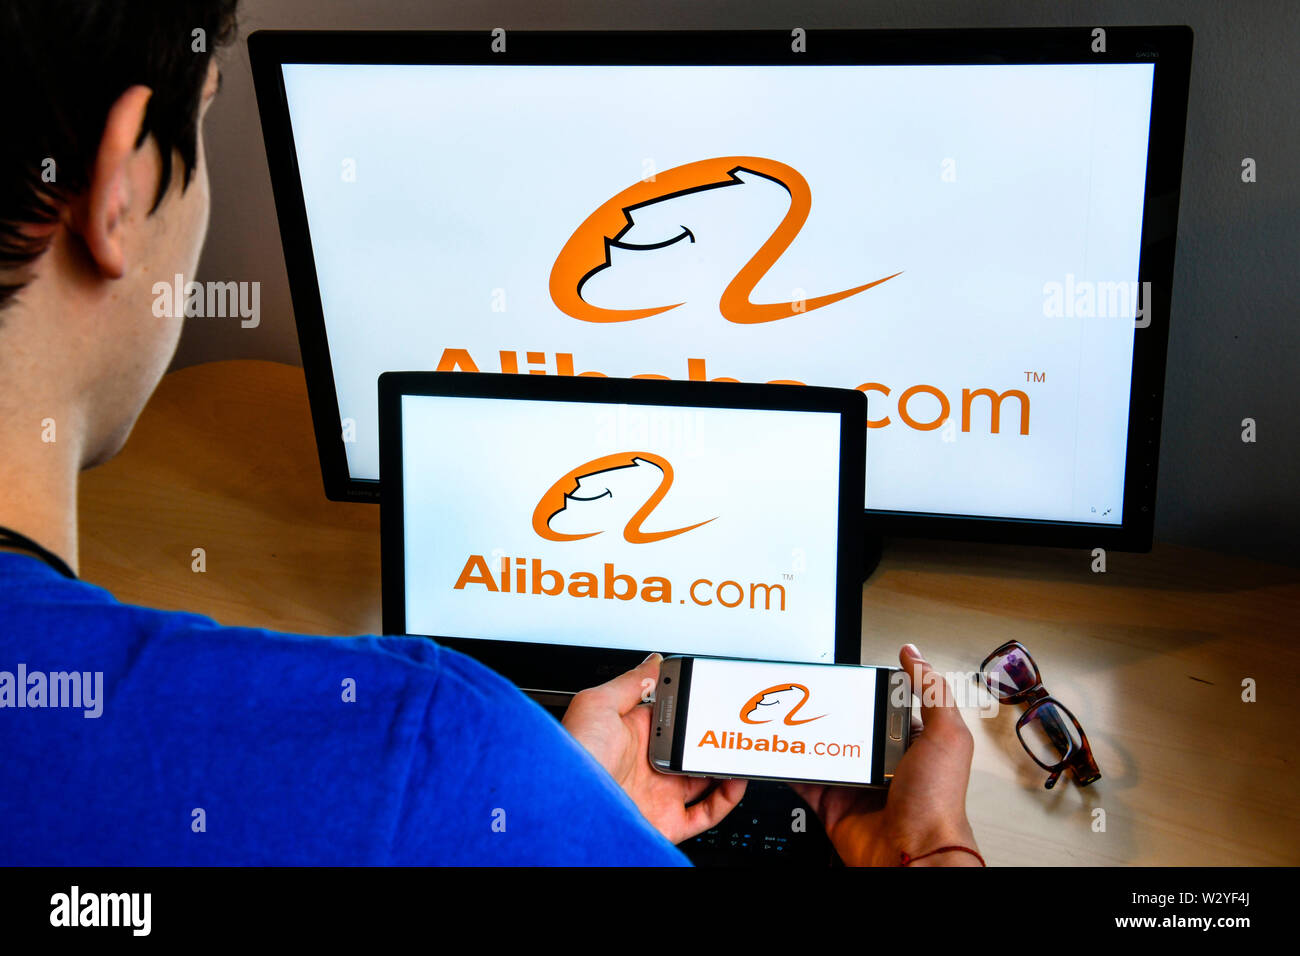 Logo Alibaba.com Stock Photo